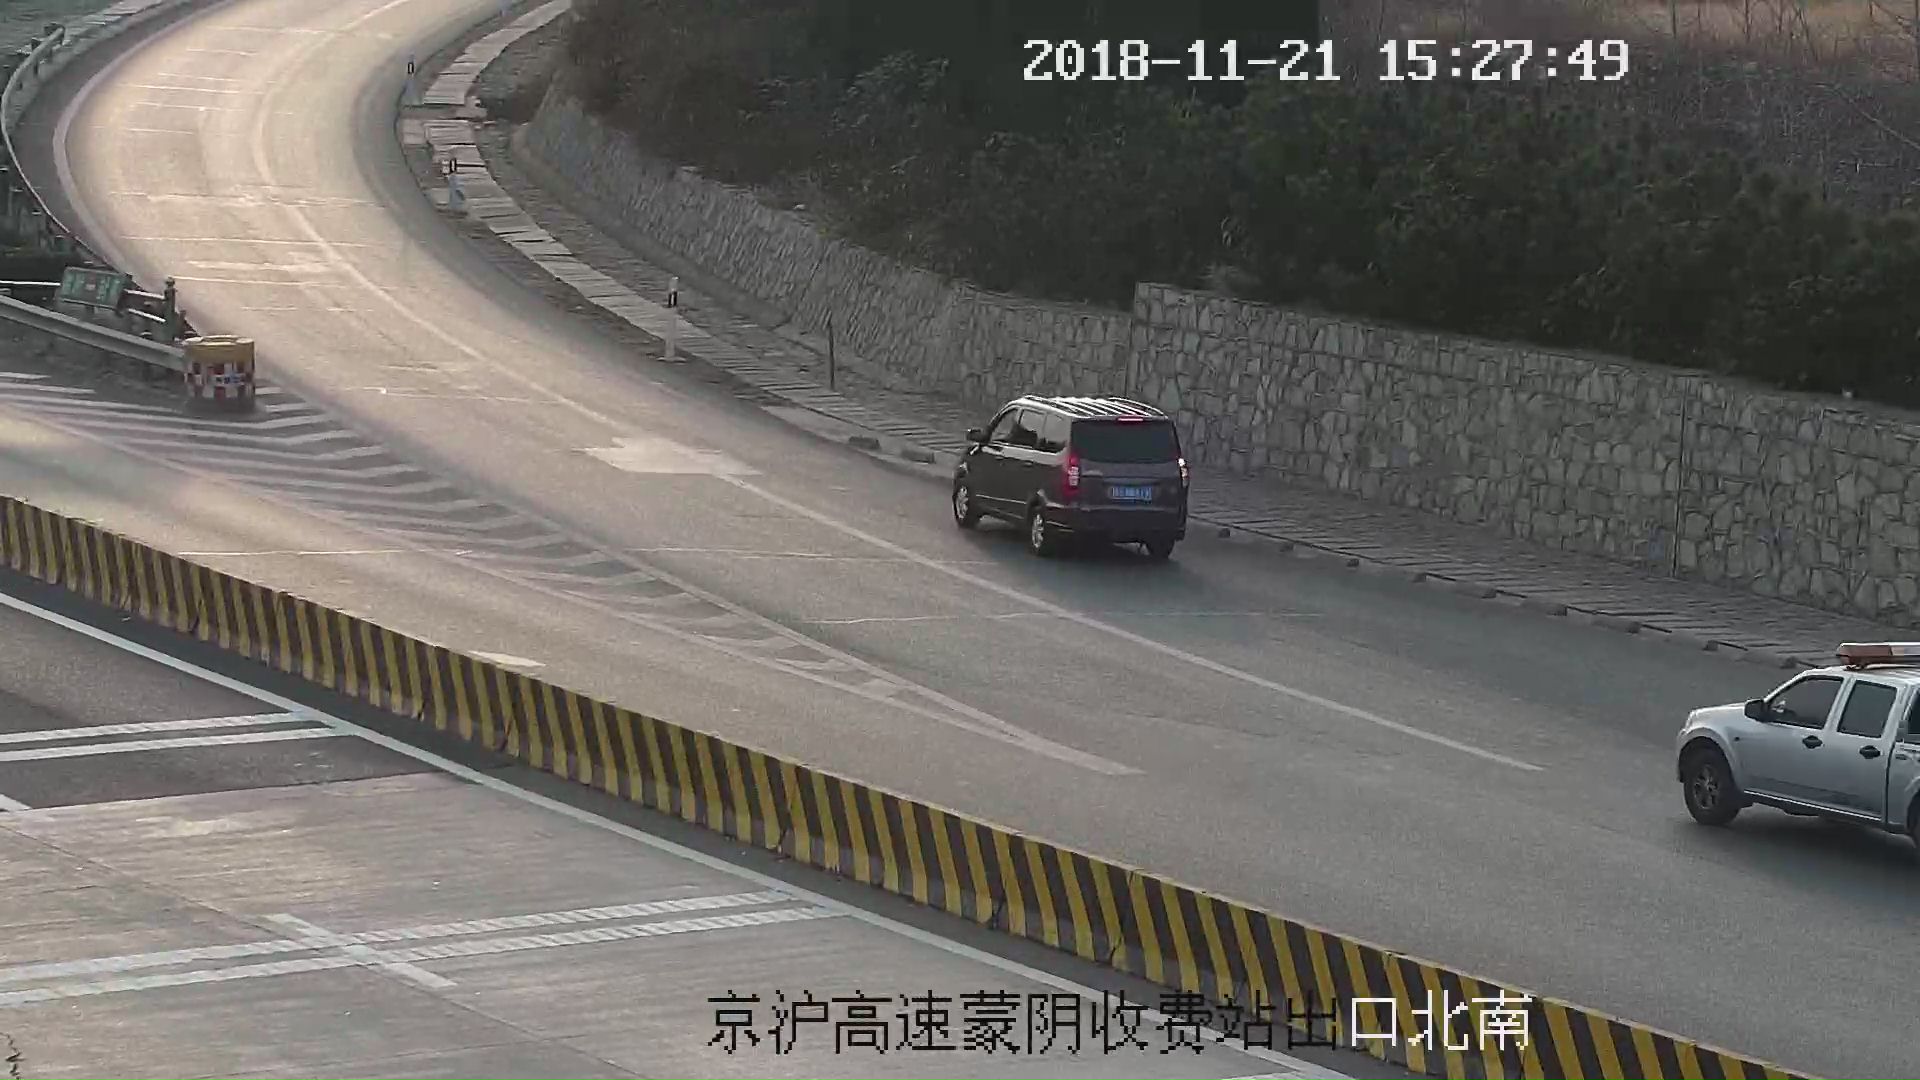 32秒丨莱芜一“大马哈”看错路标把北京当上海  高速倒车被扣12分